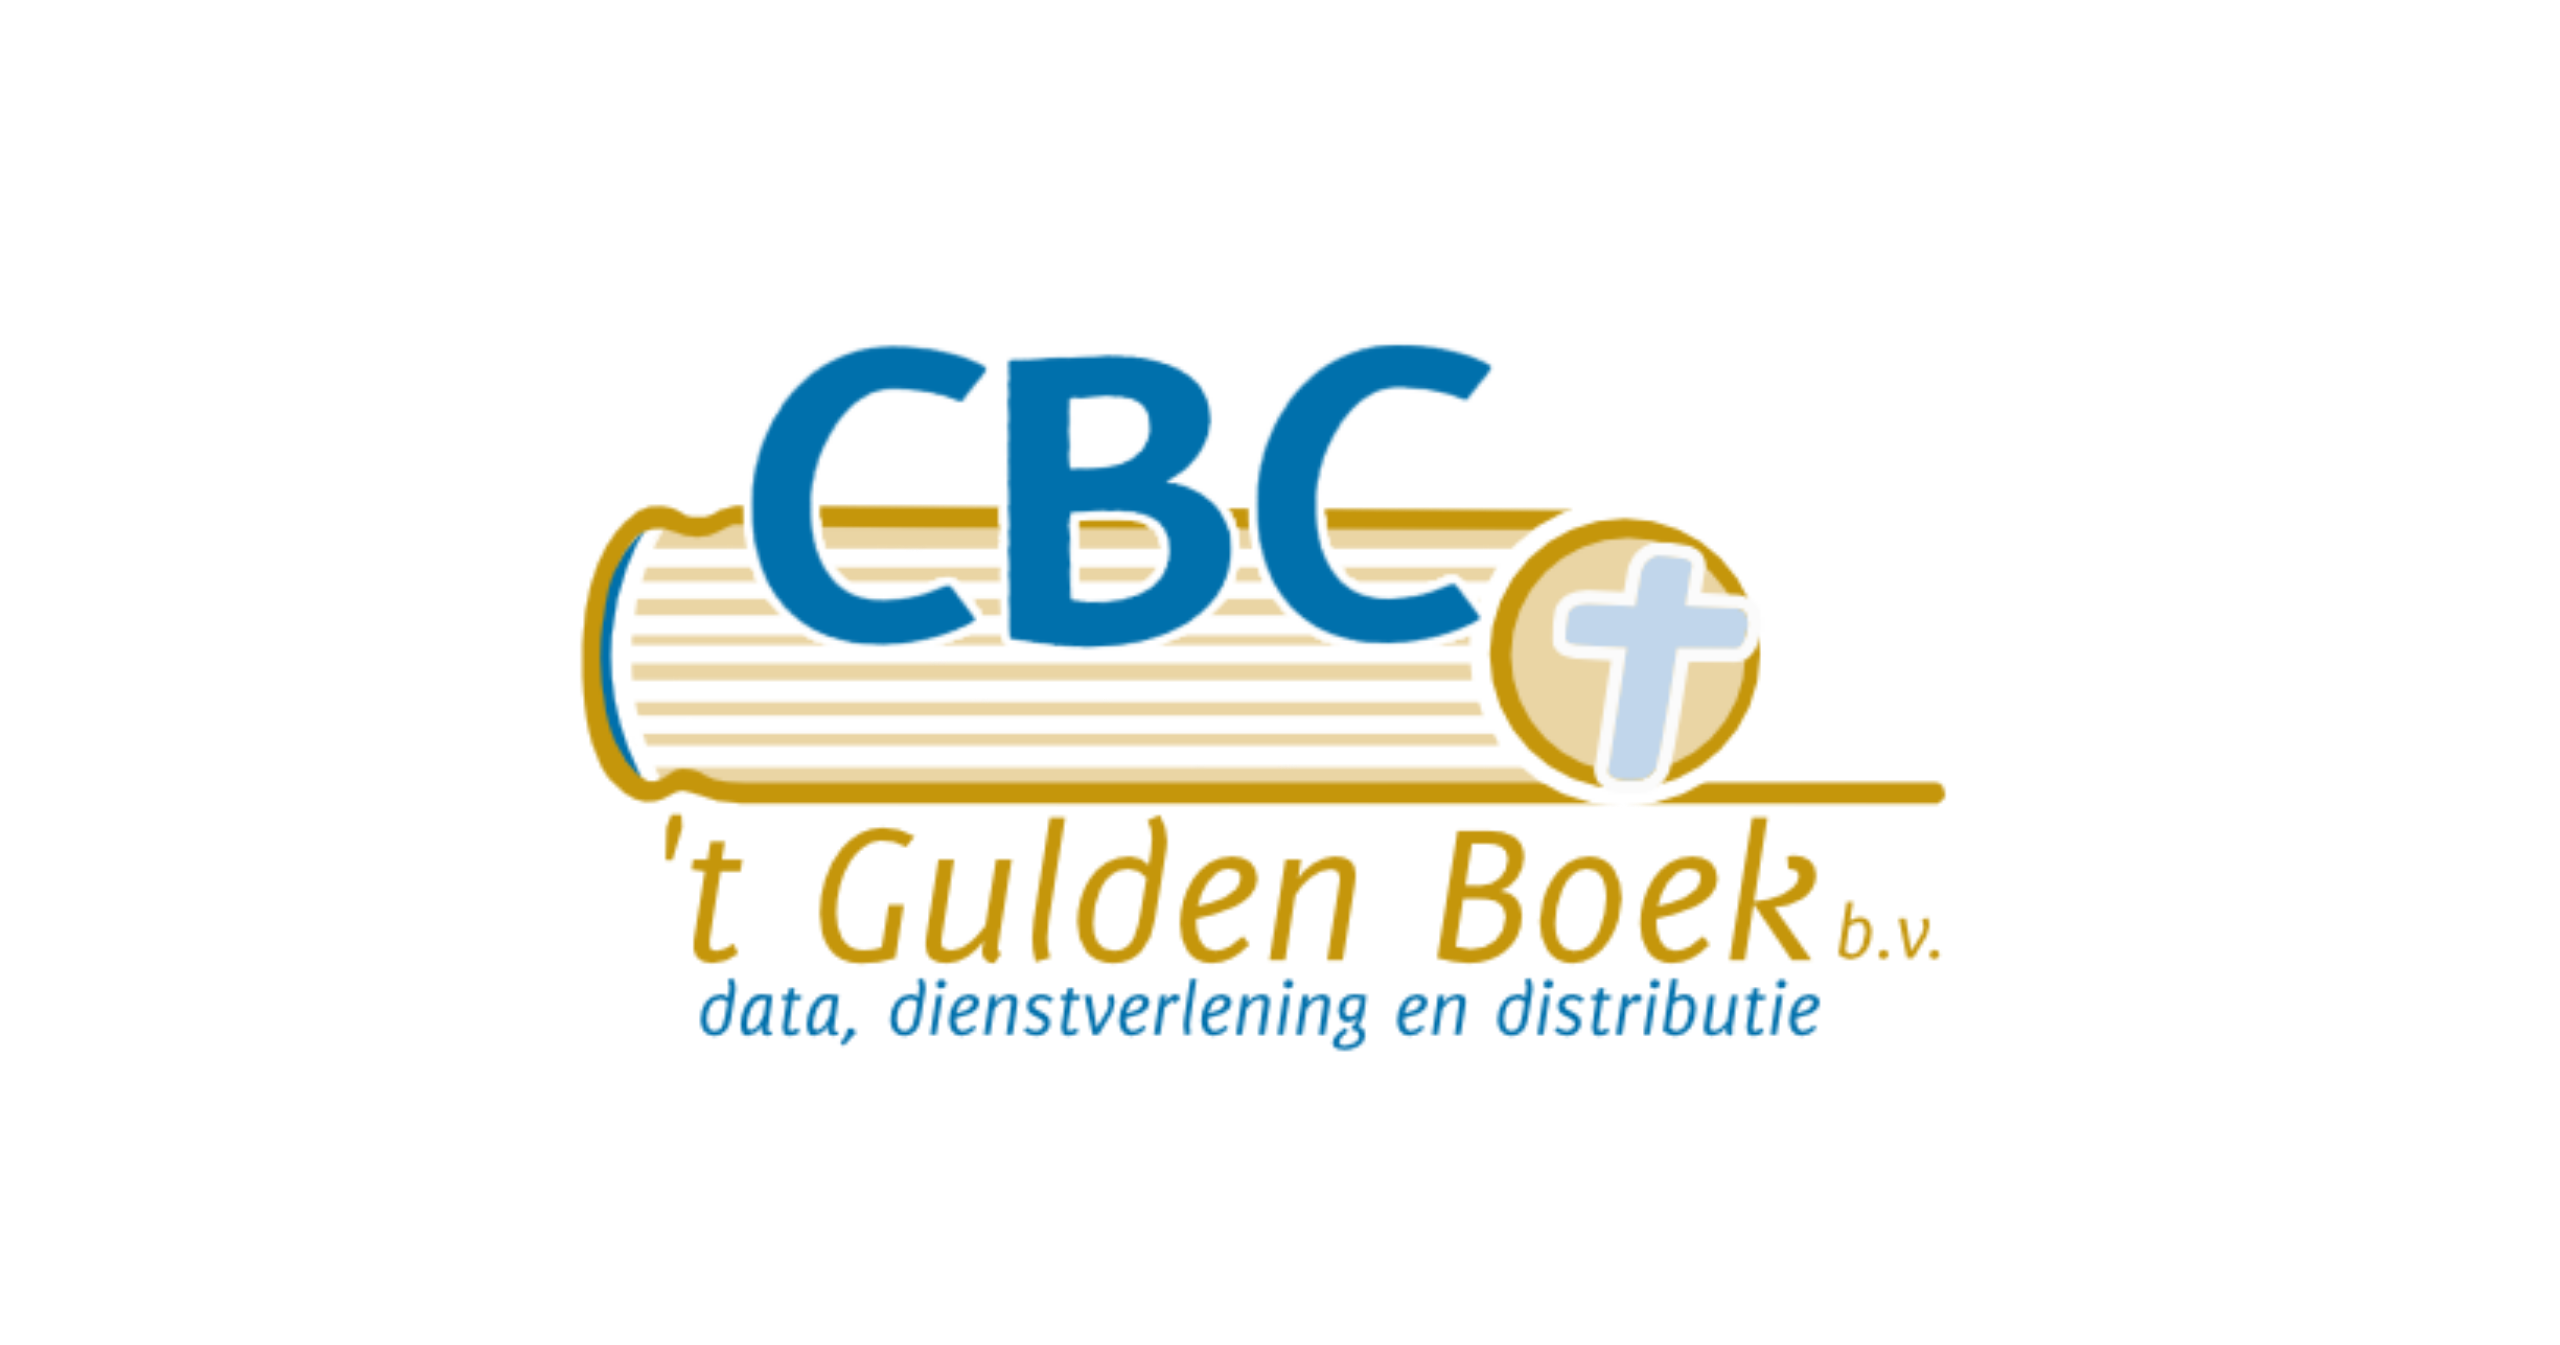 Gulden Boek Bv, 'T CBC